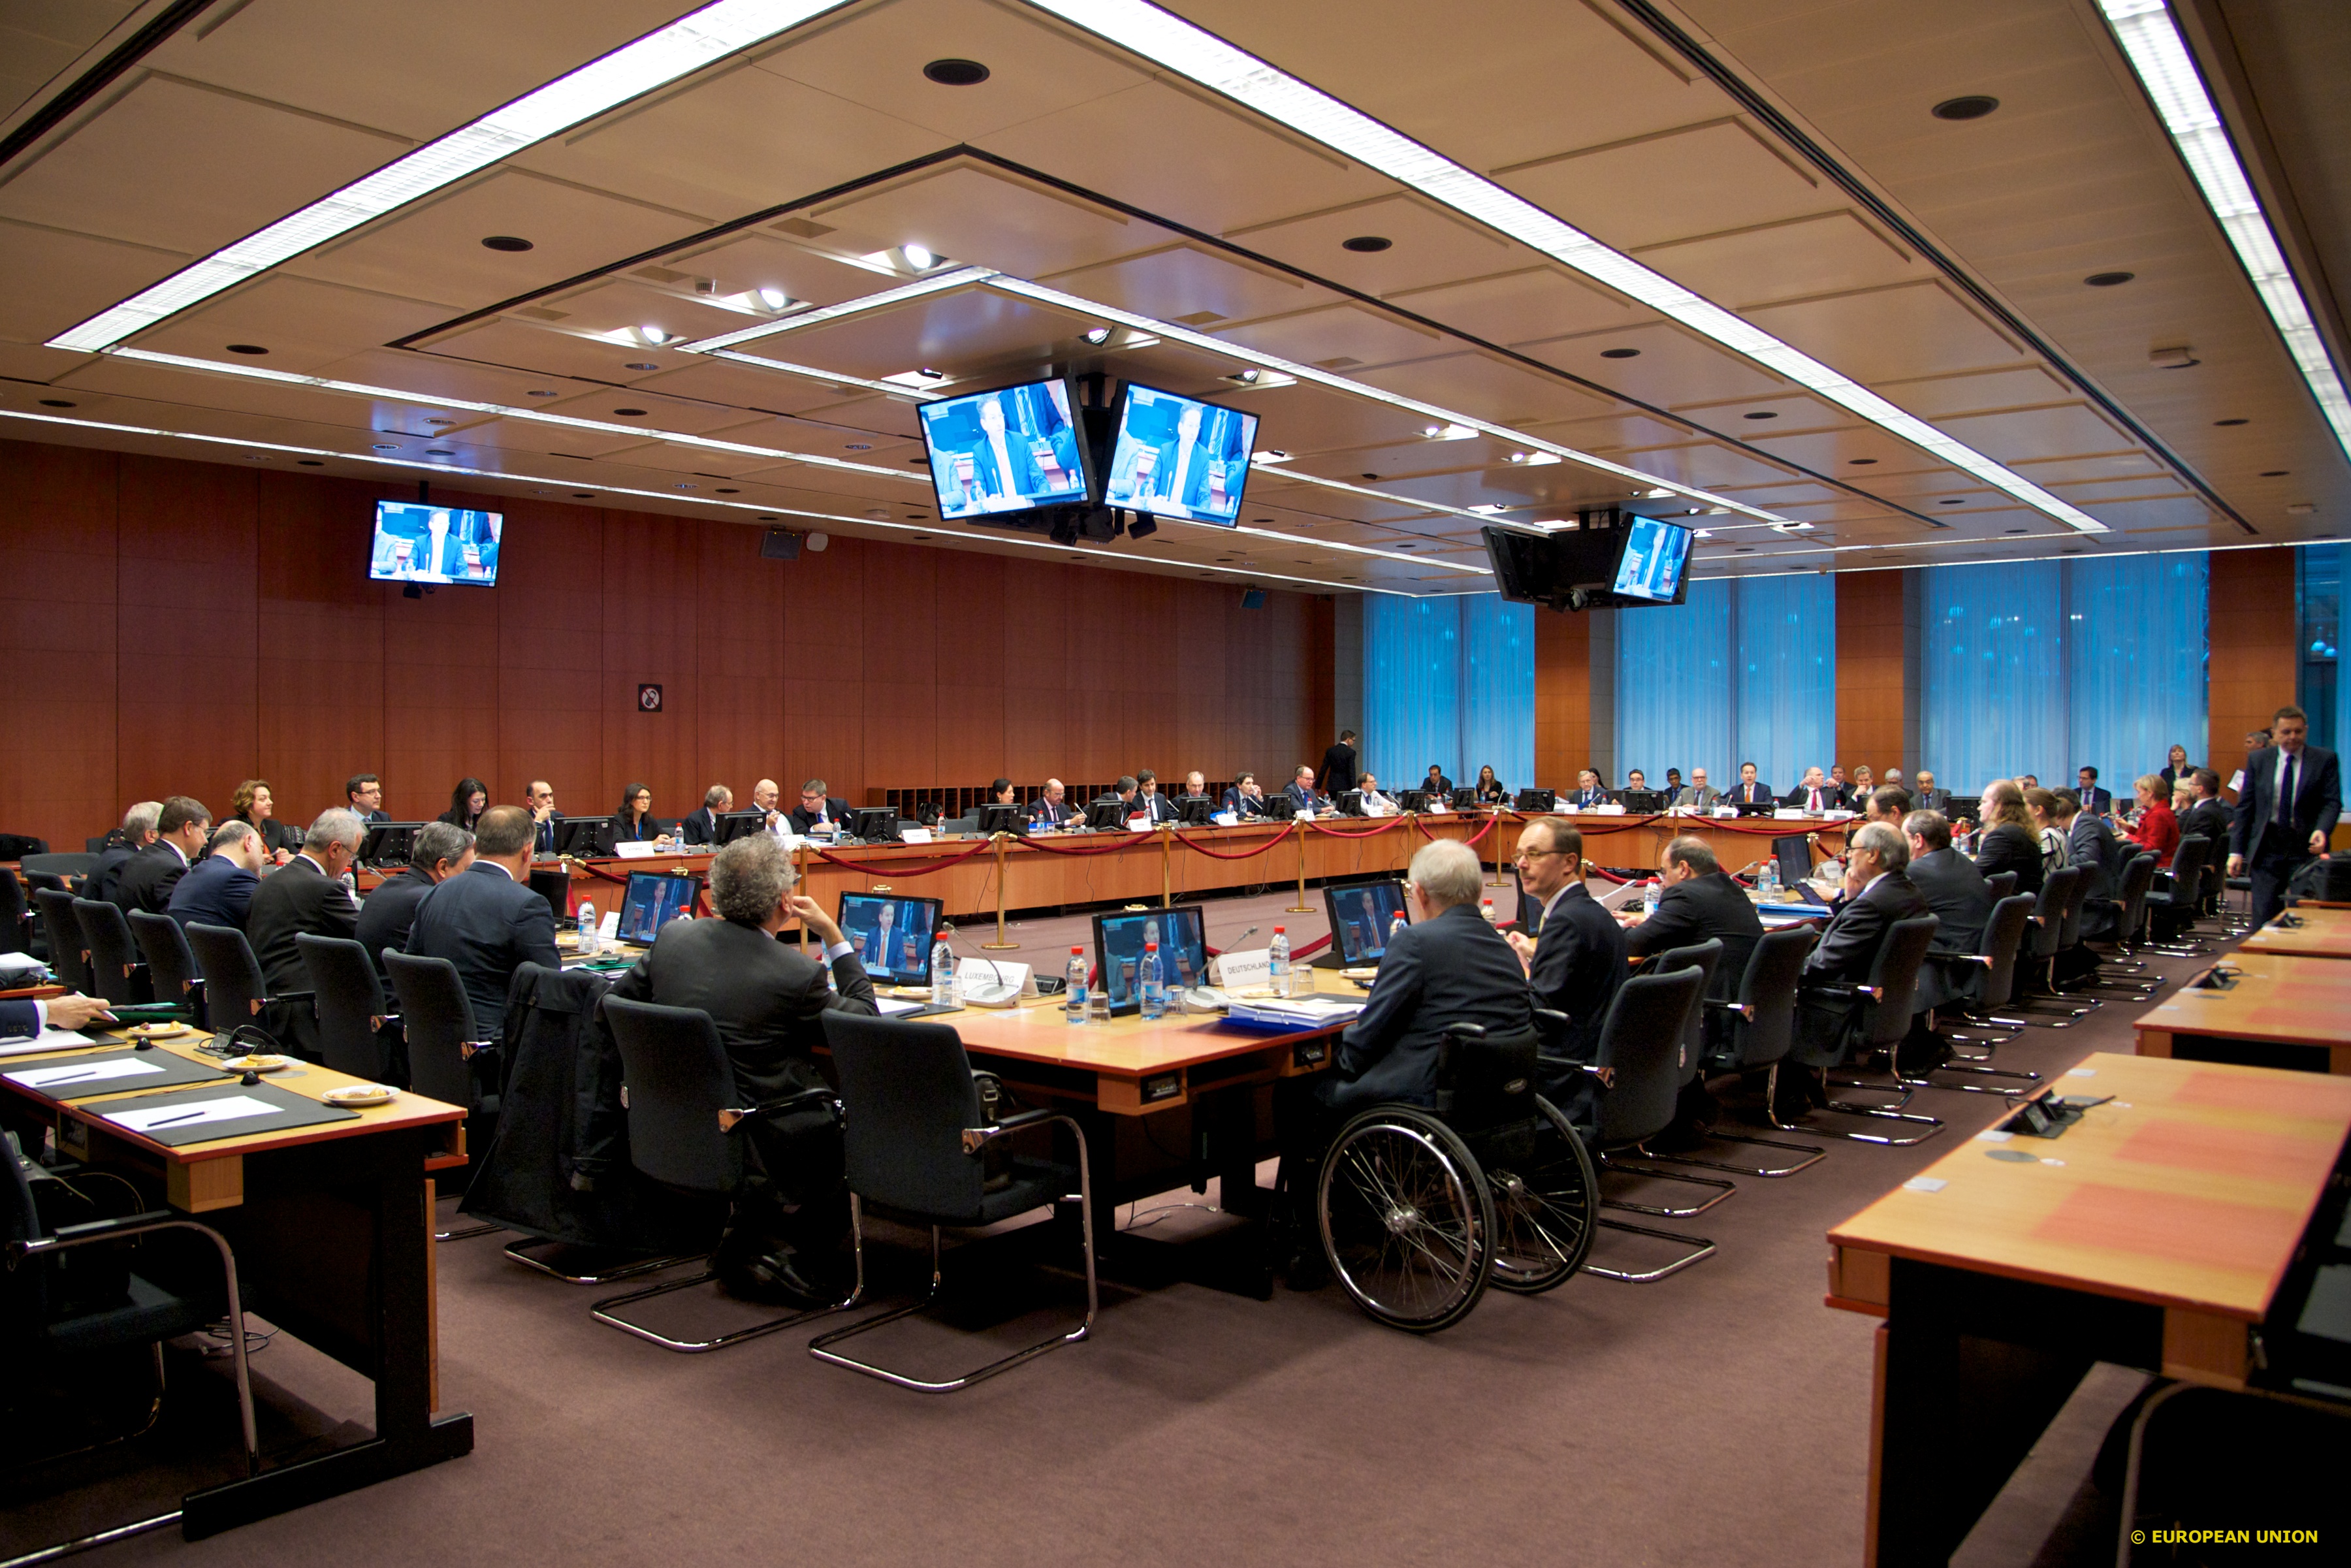 Ντάισελμπλουμ στο Eurogroup: Αισιόδοξος για την αξιολόγηση του ελληνικού προγράμματος